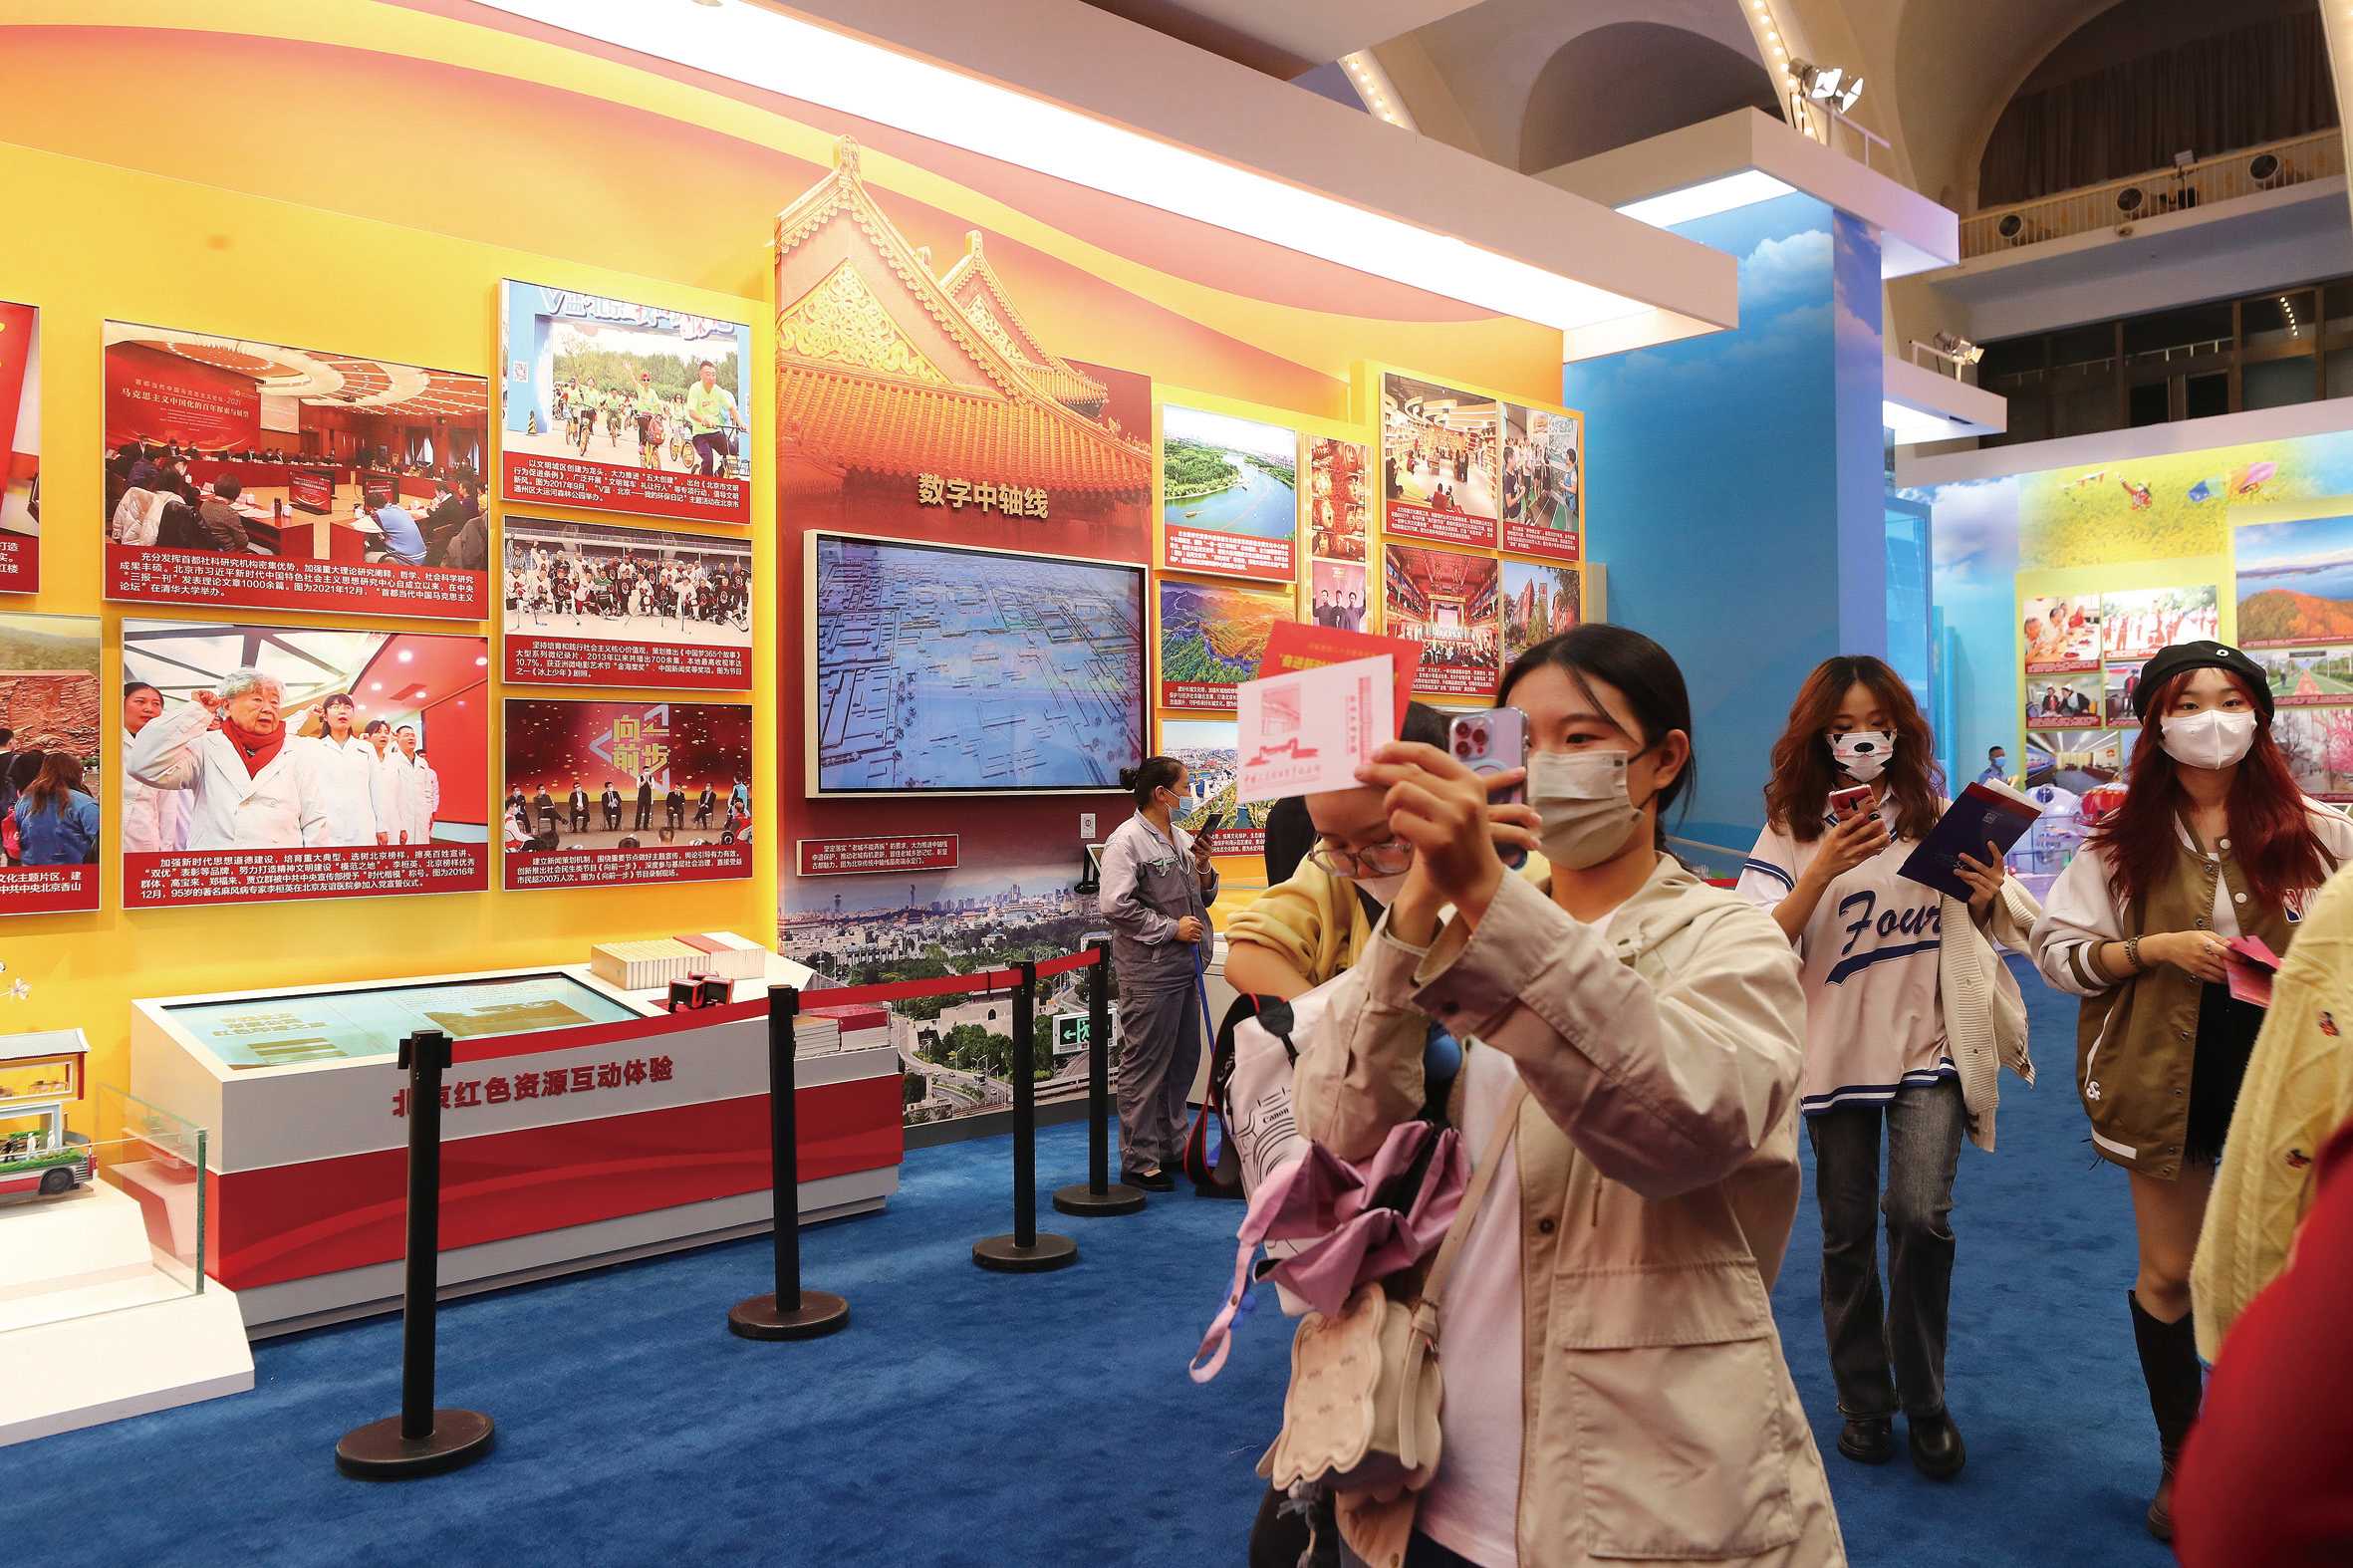 北京展区关于北京中轴线的可持续保护利用成果展示  本报记者 卢 旭 摄